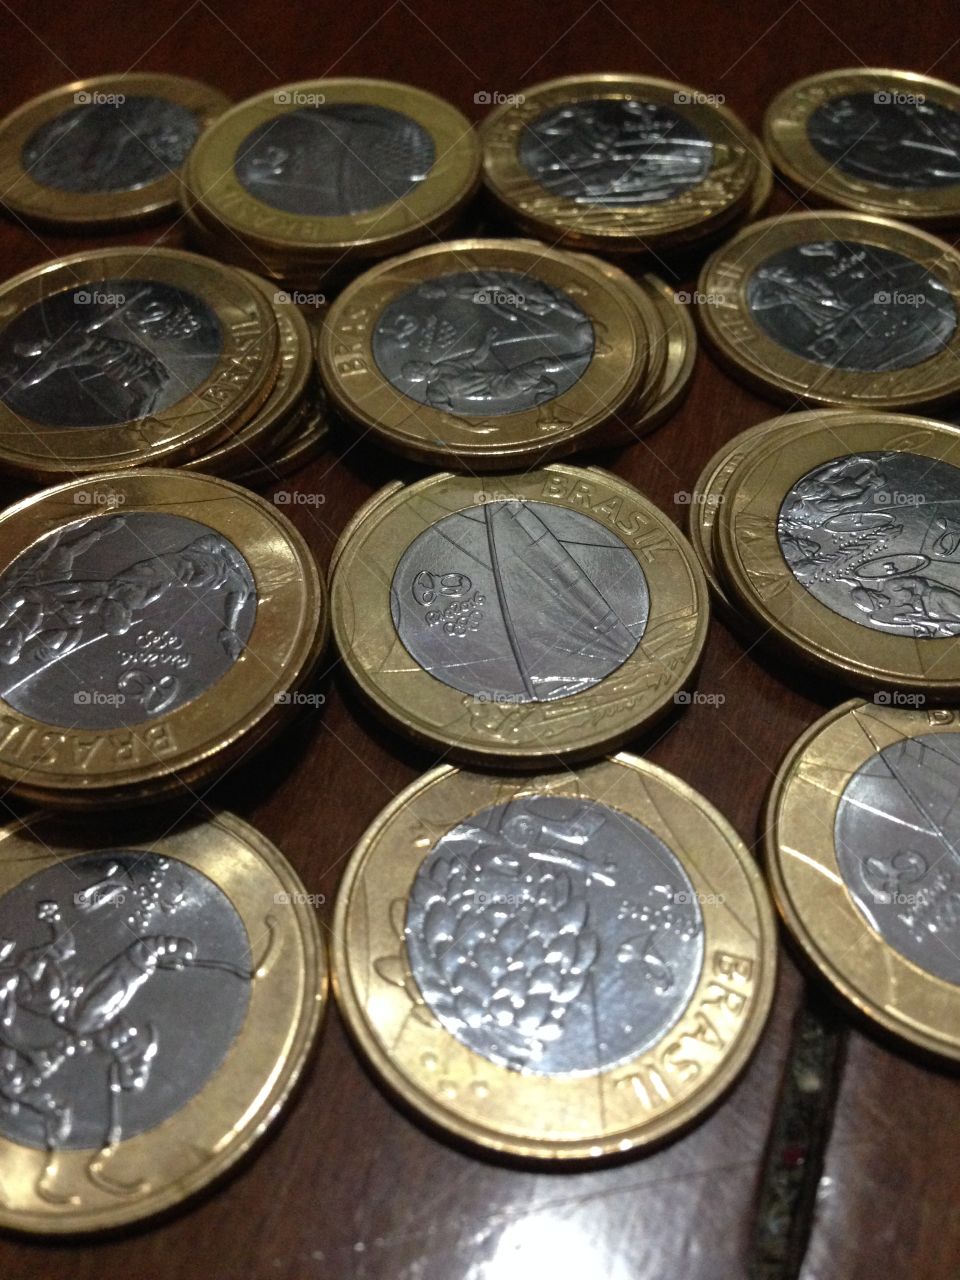 #coins